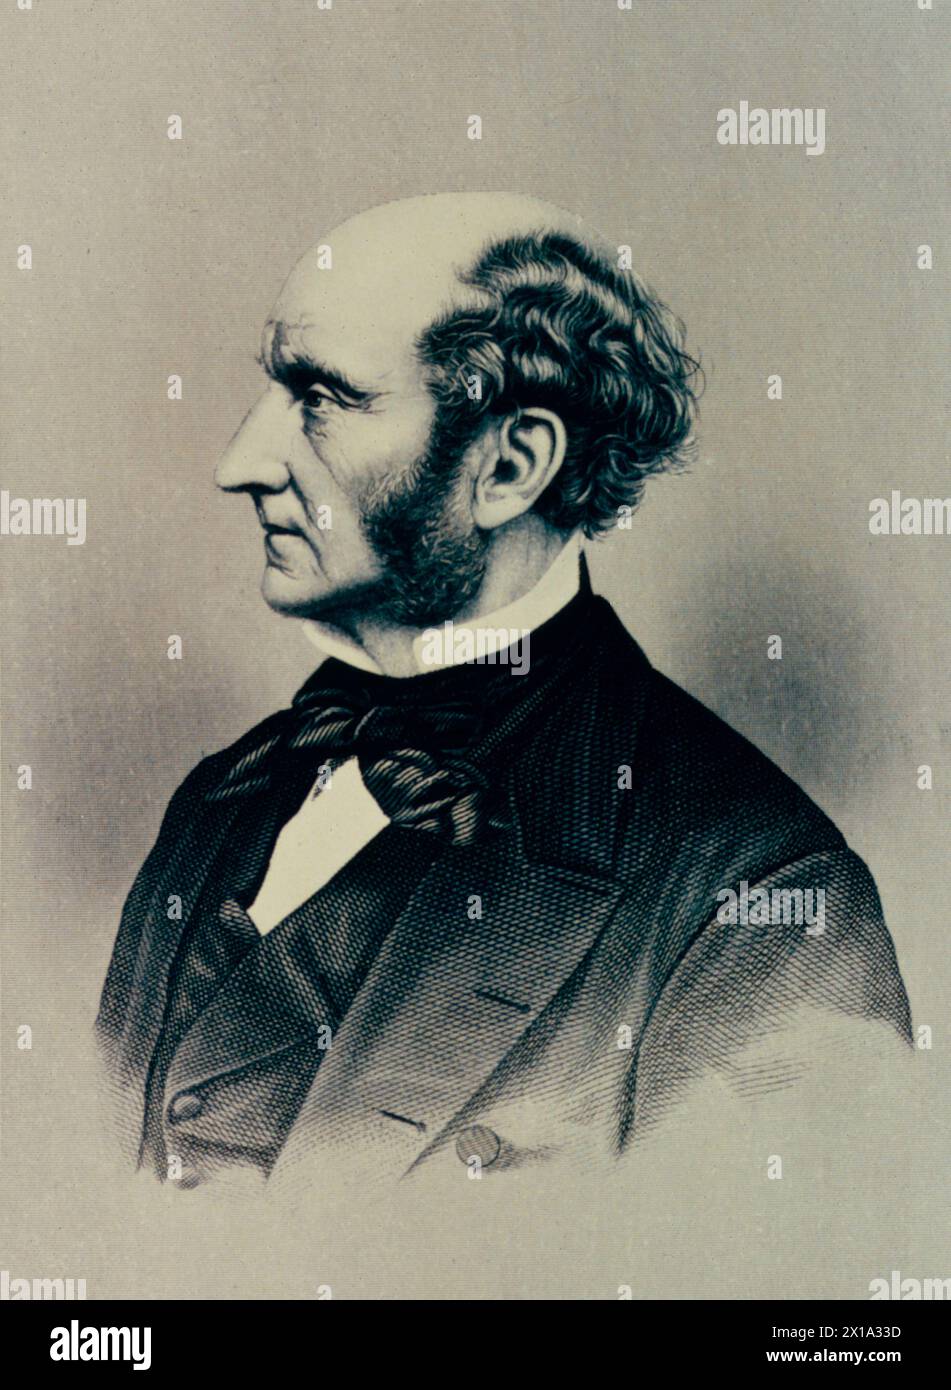 Portrait of English philosopher John Stuart Mill, 1860s Stock Photo